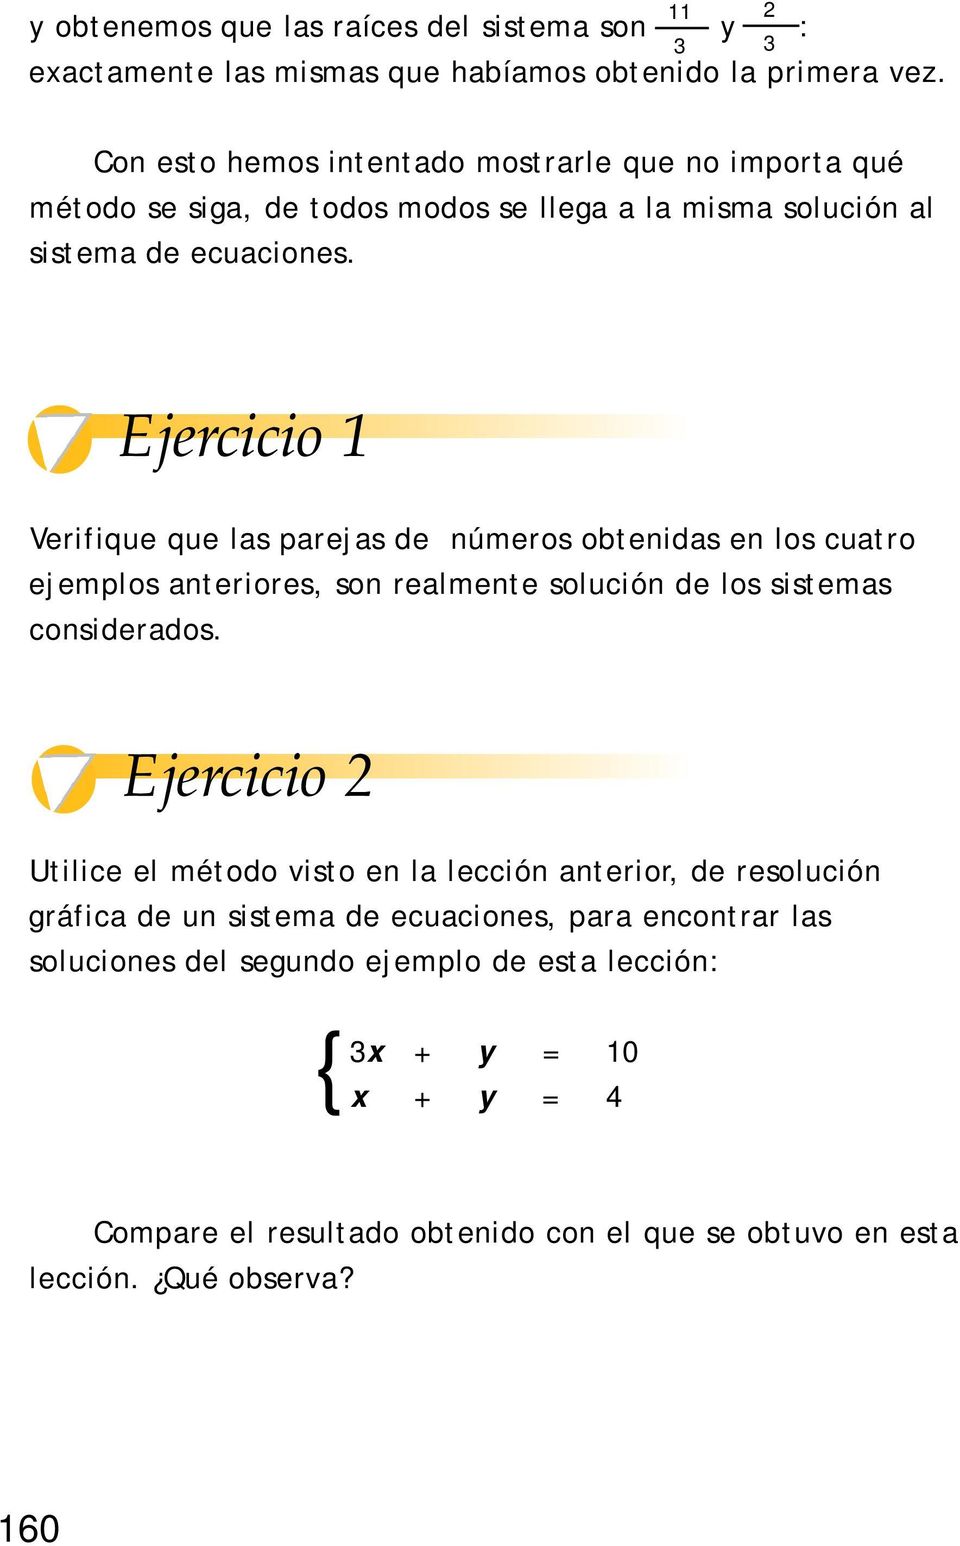 Ejercicio 1 Verifique que las parejas de números obtenidas en los cuatro ejemplos anteriores, son realmente solución de los sistemas considerados.